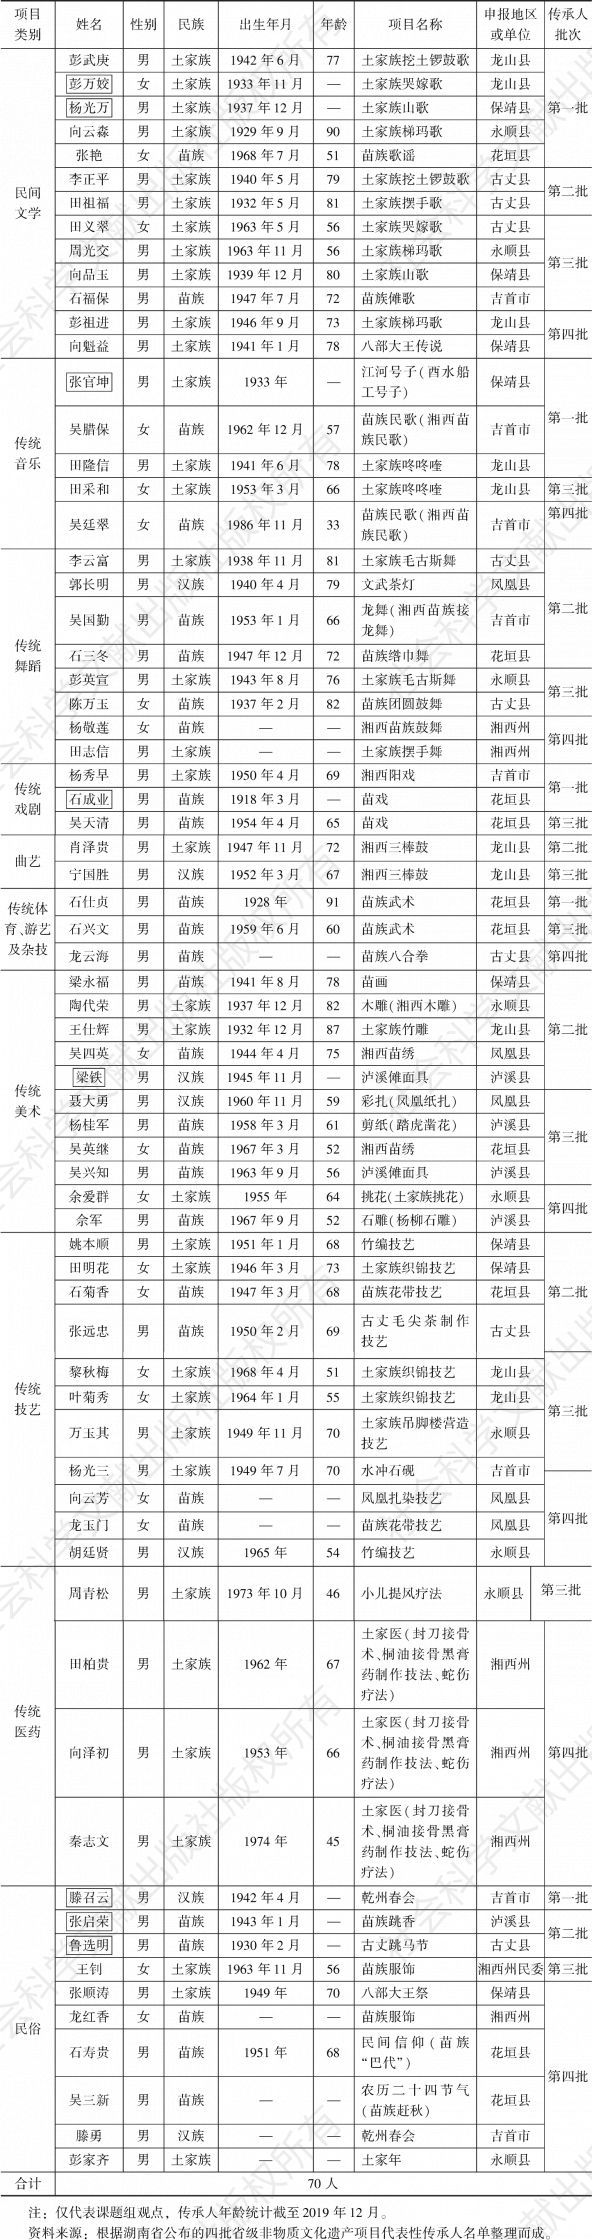 表4 湘西州省级非物质文化遗产项目代表性传承人名单